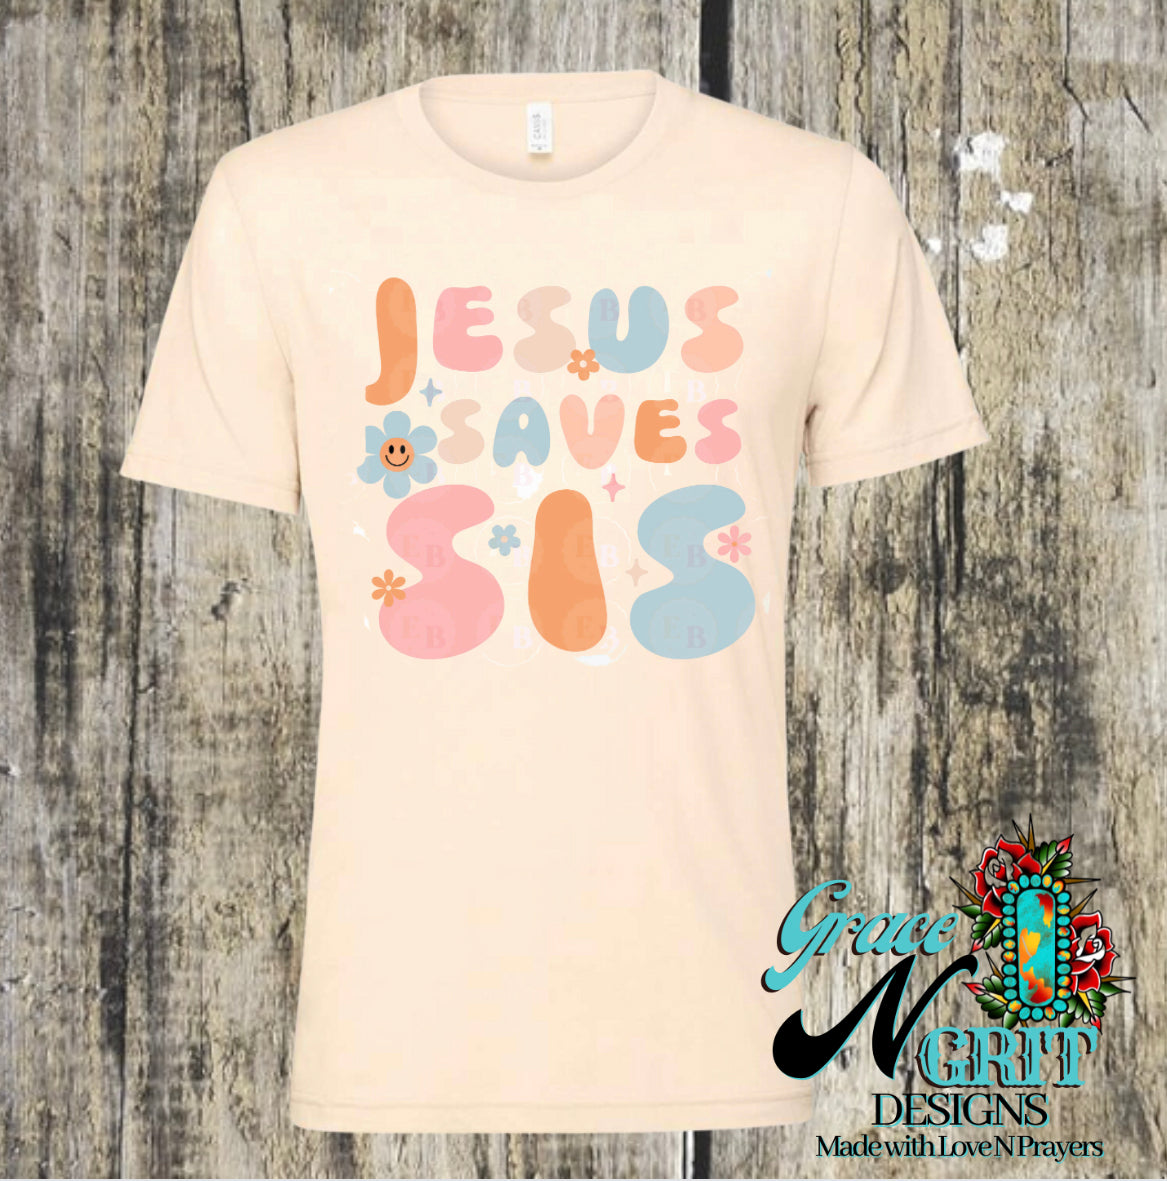 Jesus Saves Sis